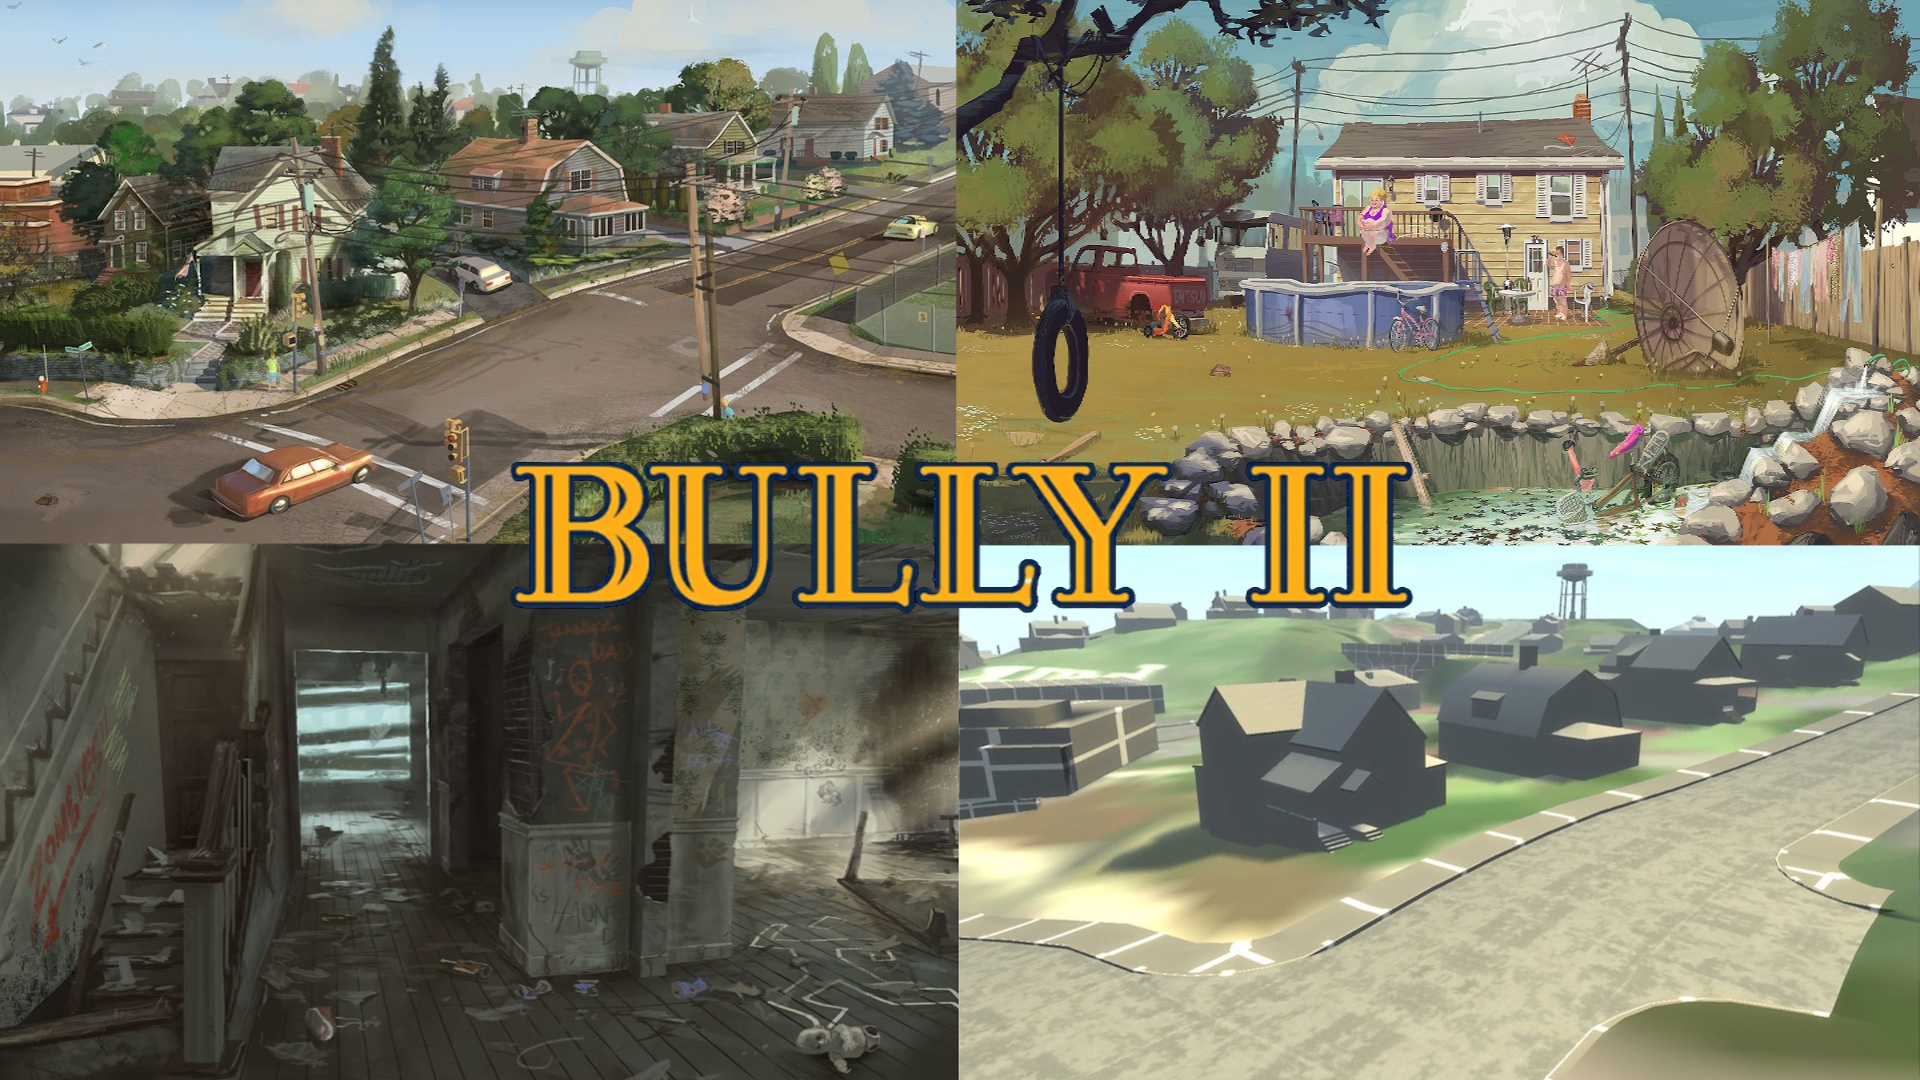 Bully 2 pode ser o próximo grande lançamento da Rockstar Games após GTA 6